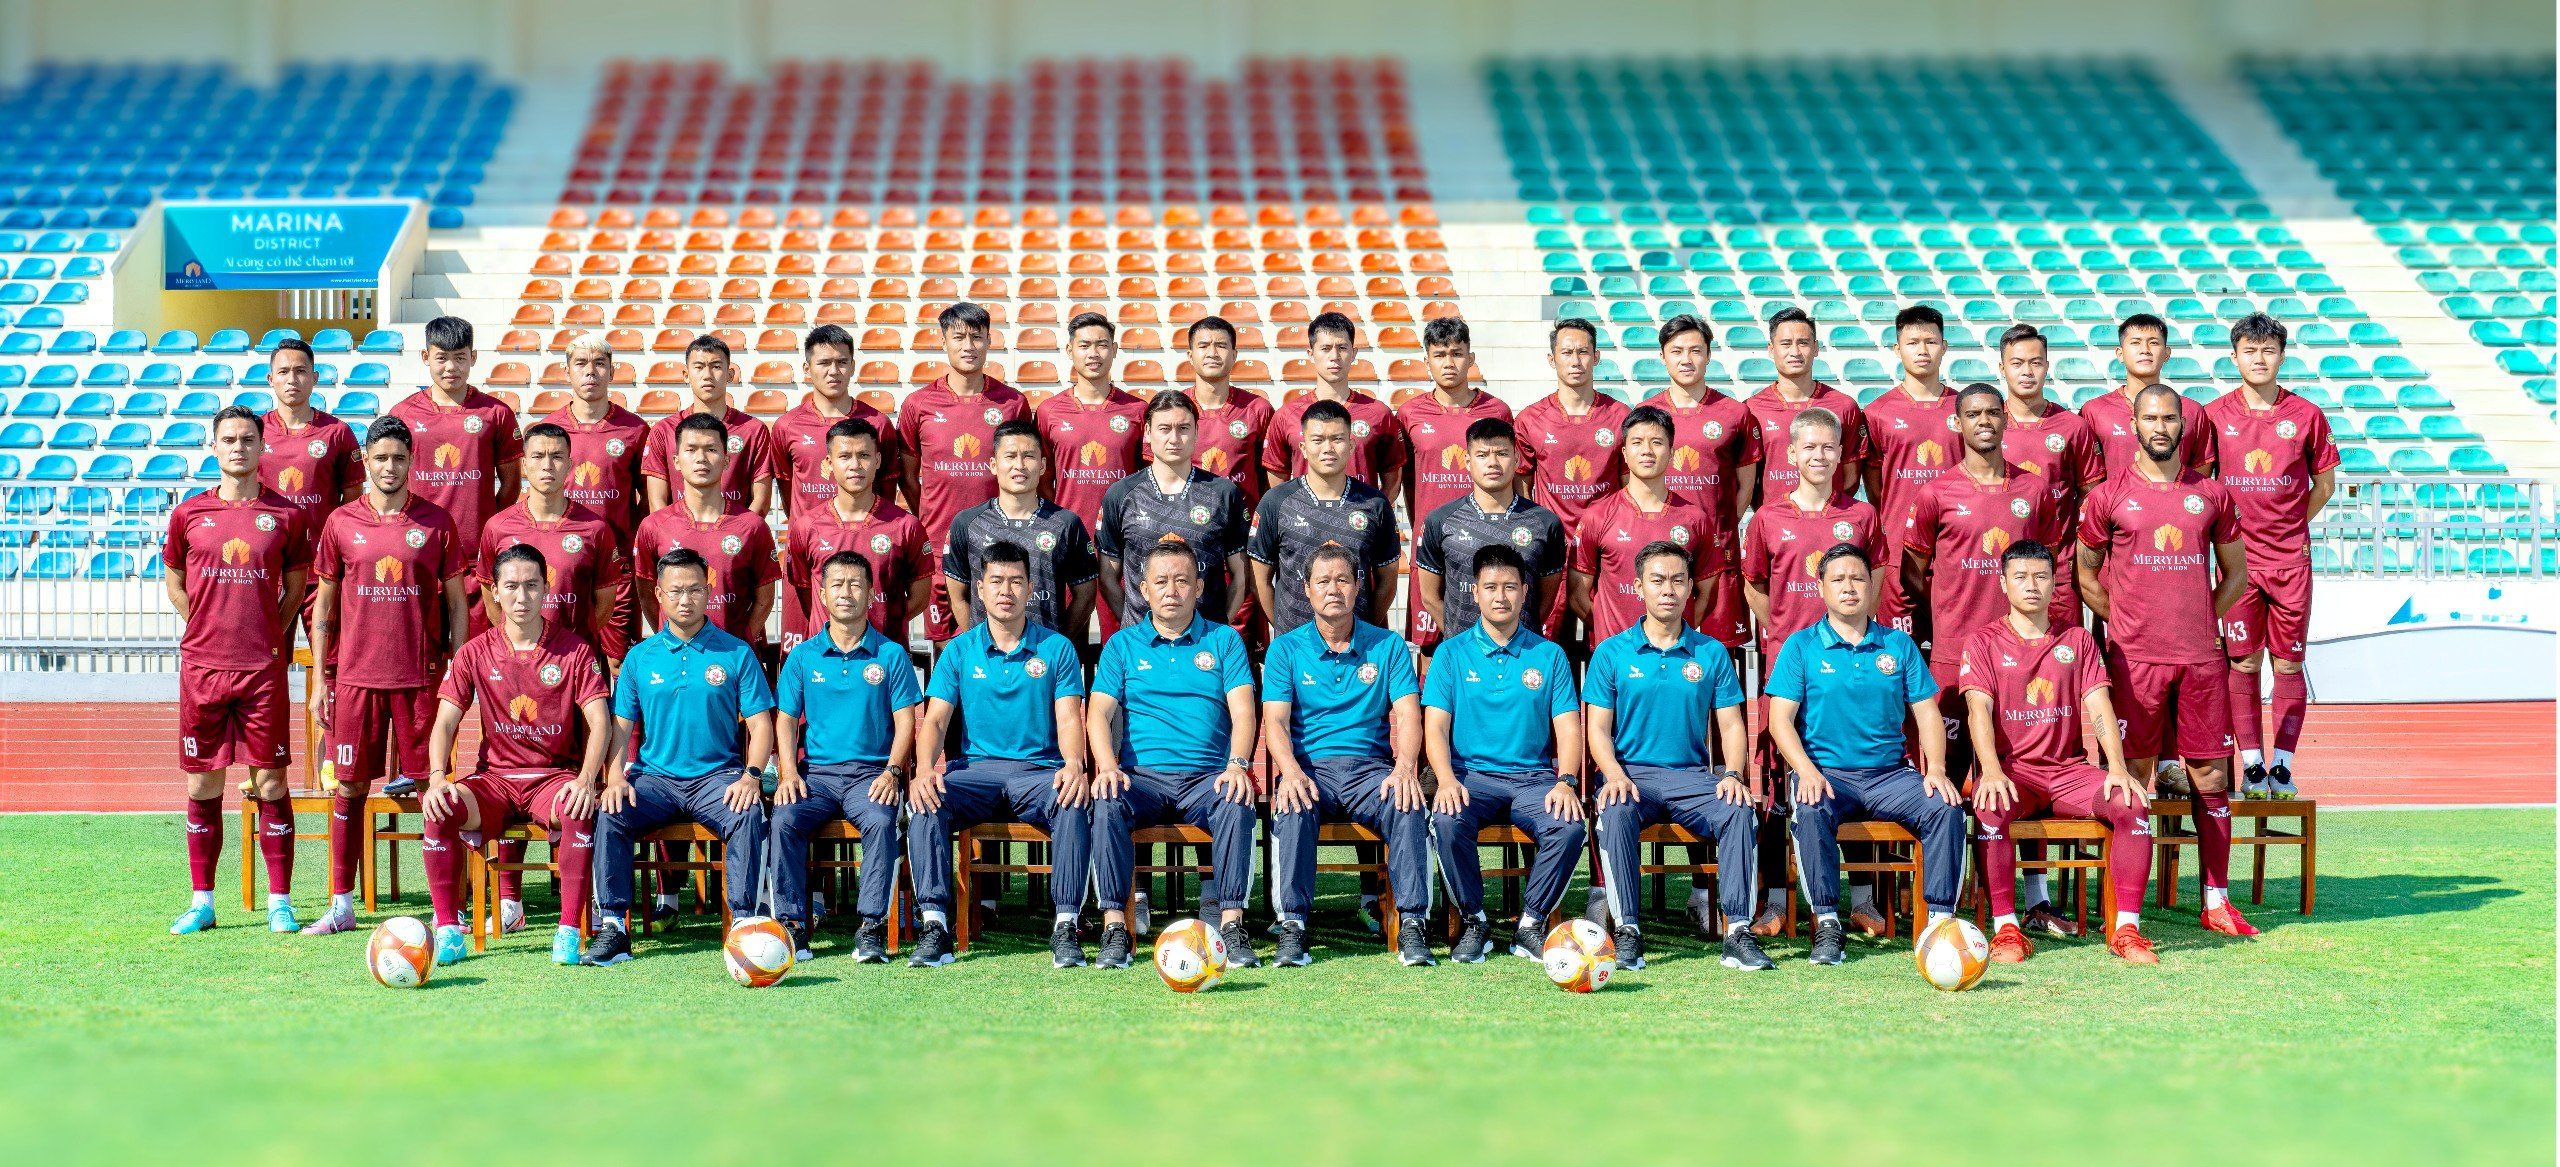 Câu lạc bộ bóng đá MerryLand Quy Nhơn Bình Định